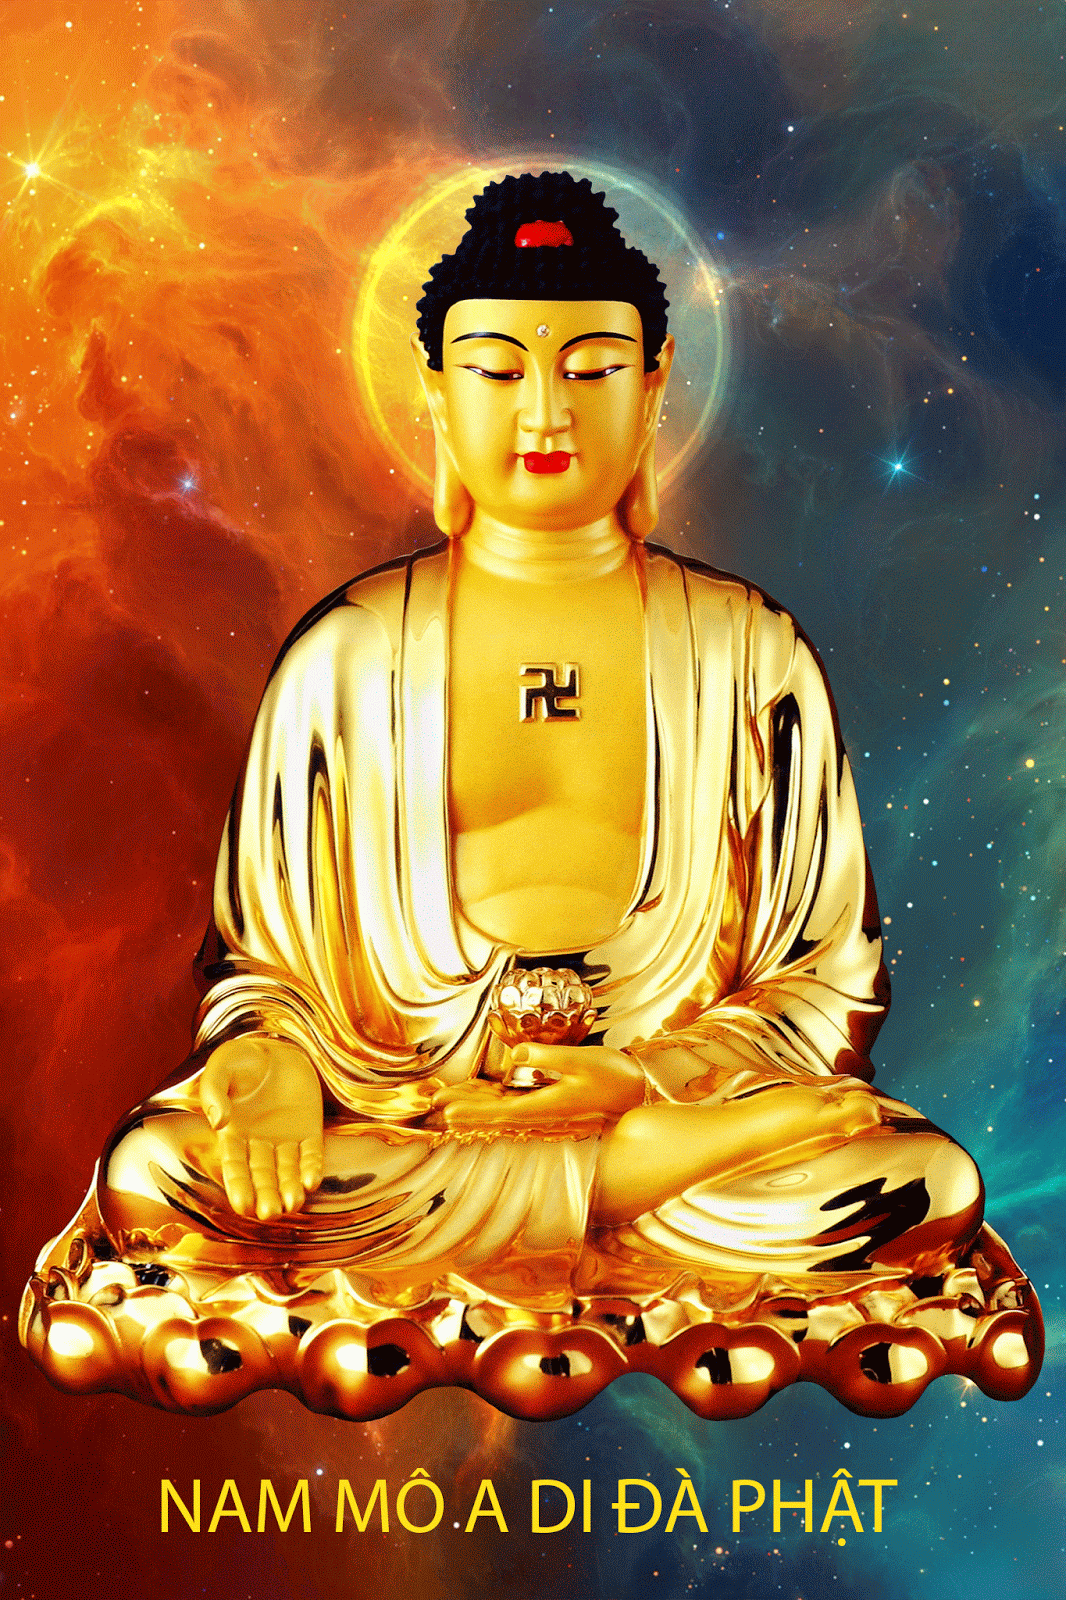 Hãy cùng đến với Phật Tử Tỉnh Bà Rịa Vũng Tàu để khám phá những giá trị tinh thần và đức tin thật sự. Những hình ảnh trong bộ ảnh này sẽ khiến bạn cảm thấy thư thái và tìm hiểu về đạo Phật nhiều hơn.